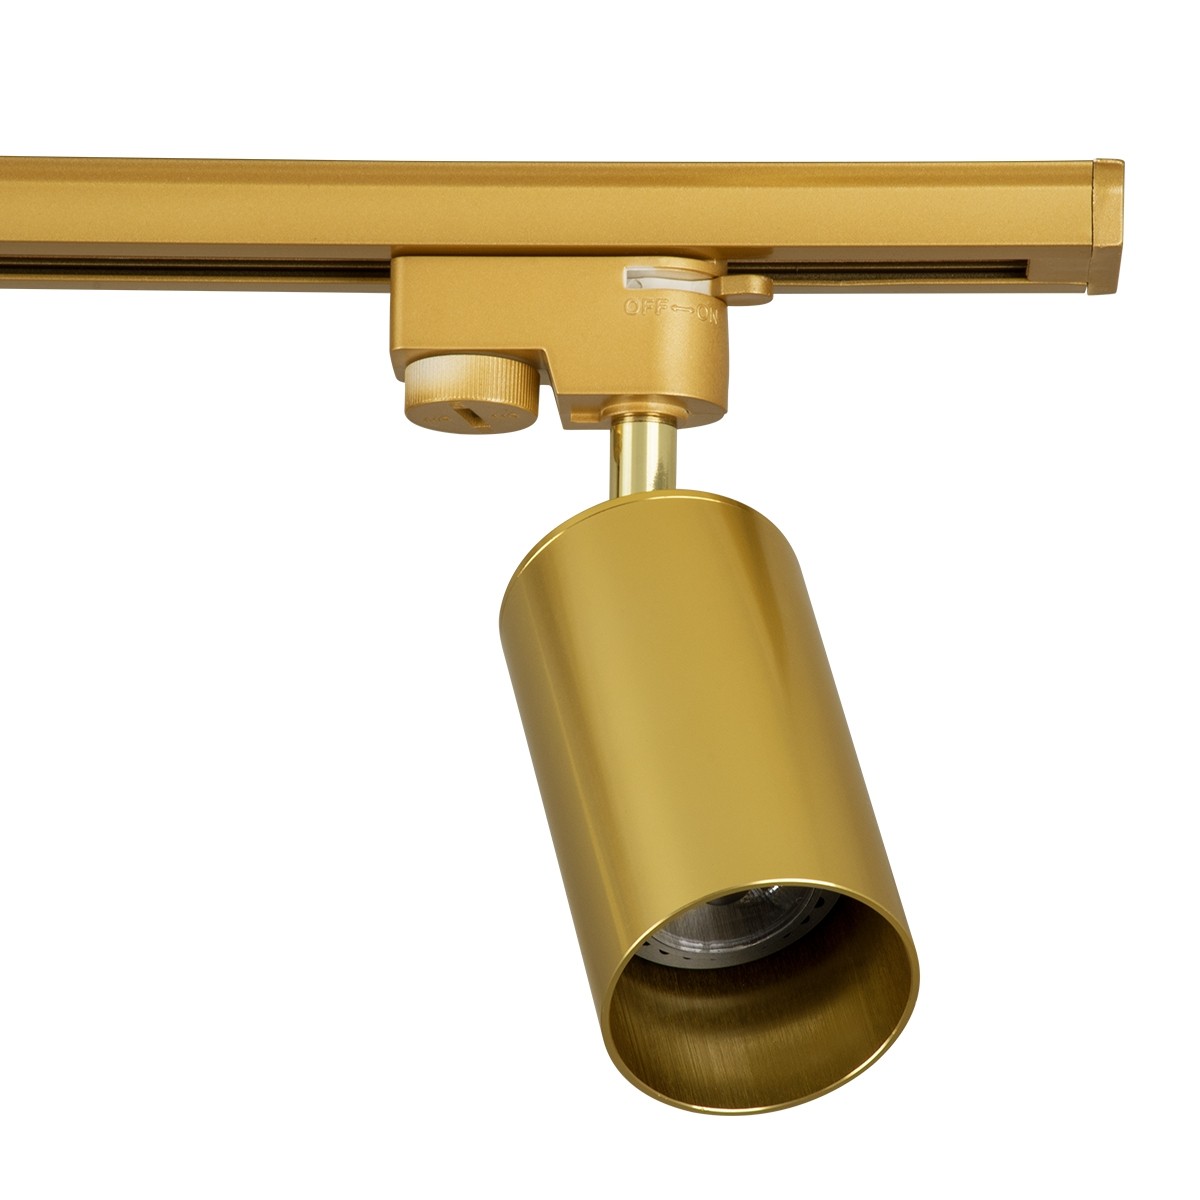 Μοντέρνο Φωτιστικό Οροφής Ράγα με Κινούμενα Σποτ LEO Τετράφωτο 4 x GU10 Μ100 x Π6 x Υ20cm - 2 Γραμμών - Χρυσό Πλατίνα